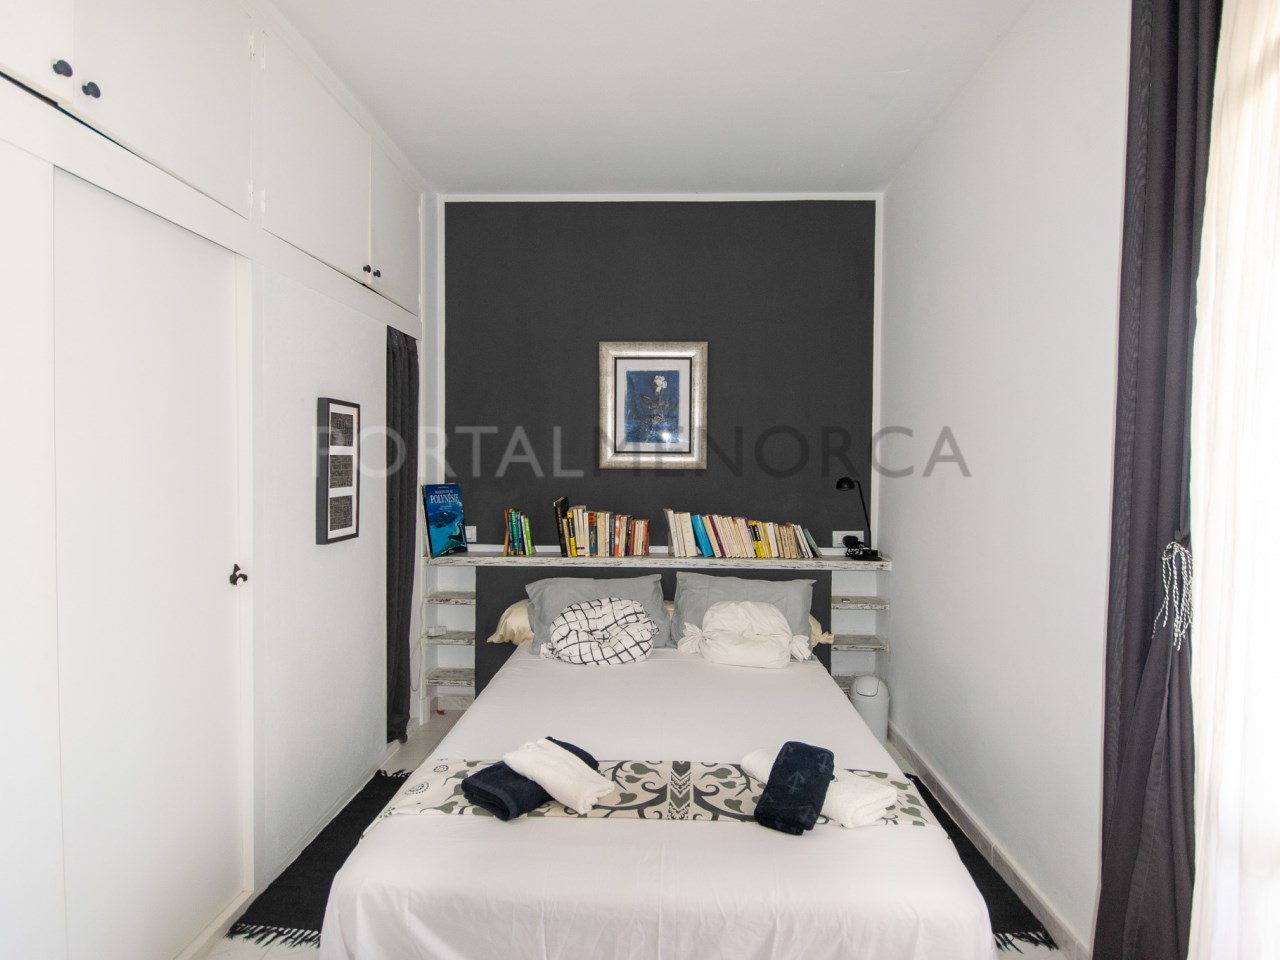 Chambre avec vue sur un appartement de 3 chambres avec une vue magnifique sur Cala Tirant et les plages de Fornells